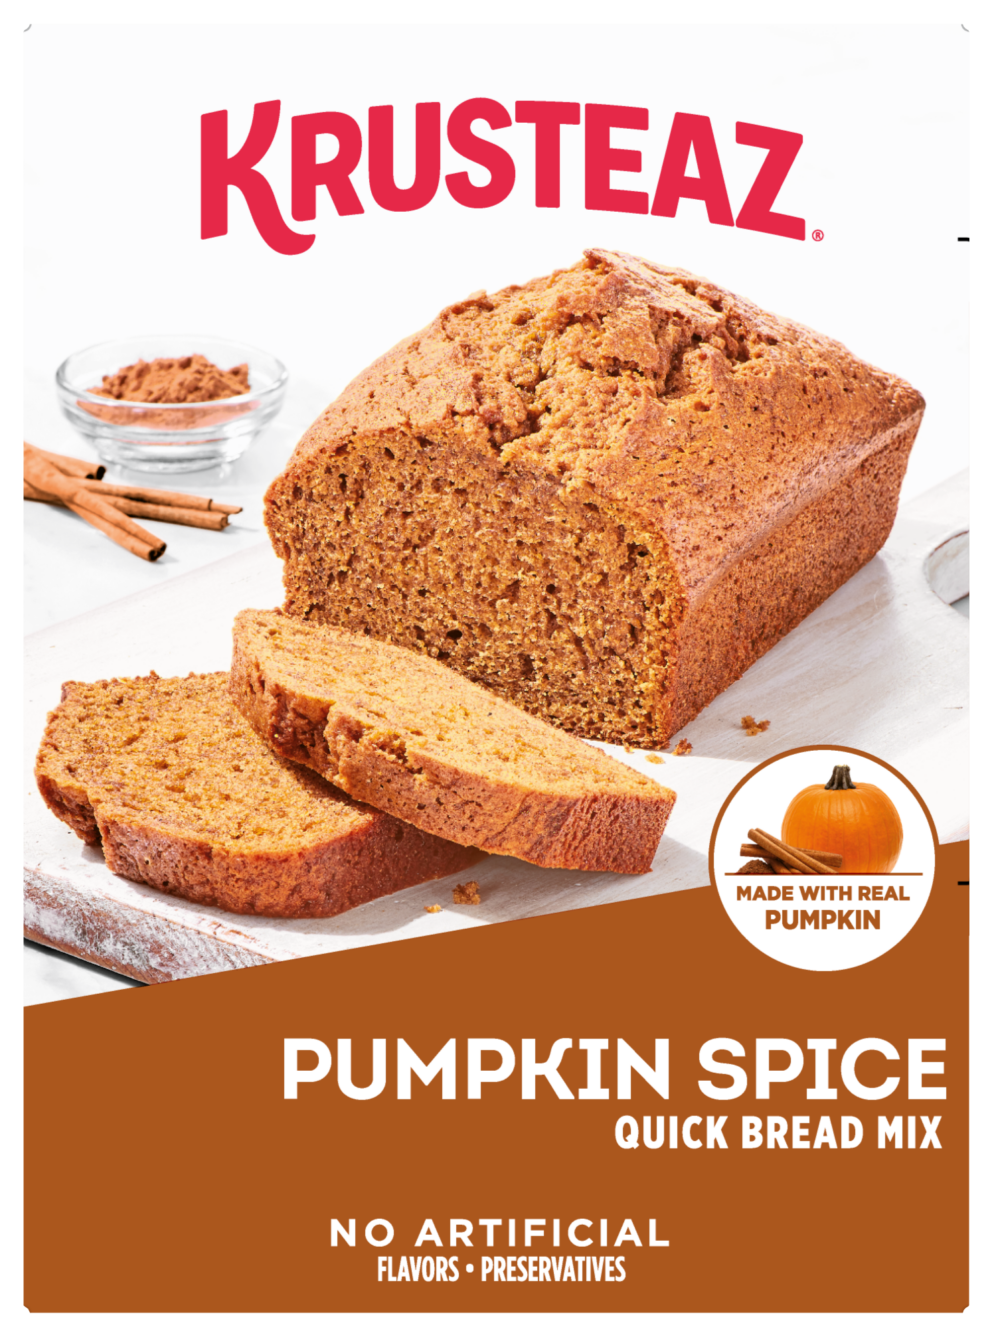 A box of Krusteaz Pumpkin Spice Quick Bread Mix.